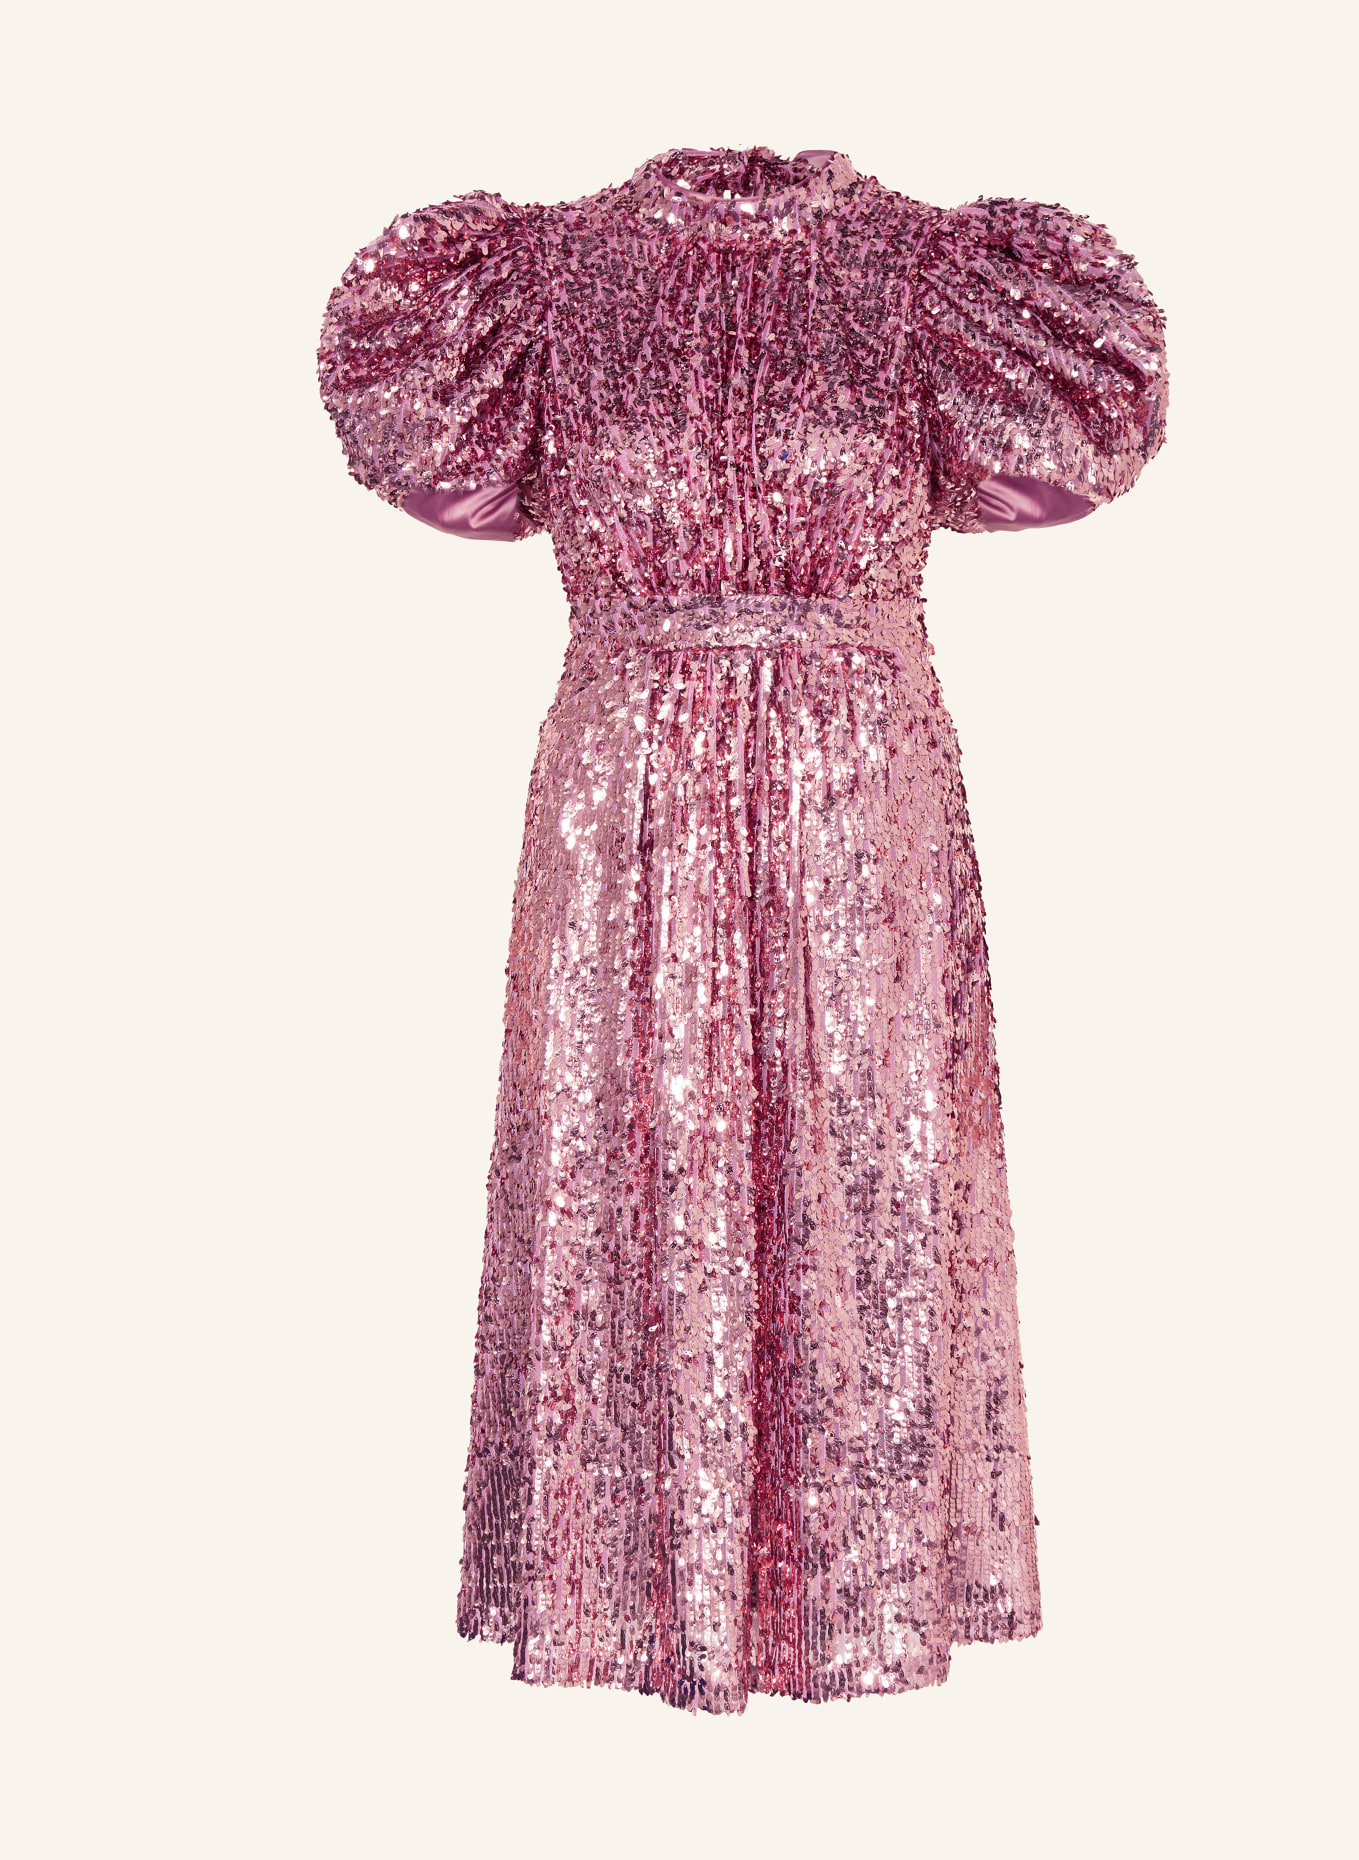 ROTATE Kleid mit Cut-out und Pailletten, Farbe: PINK (Bild 1)